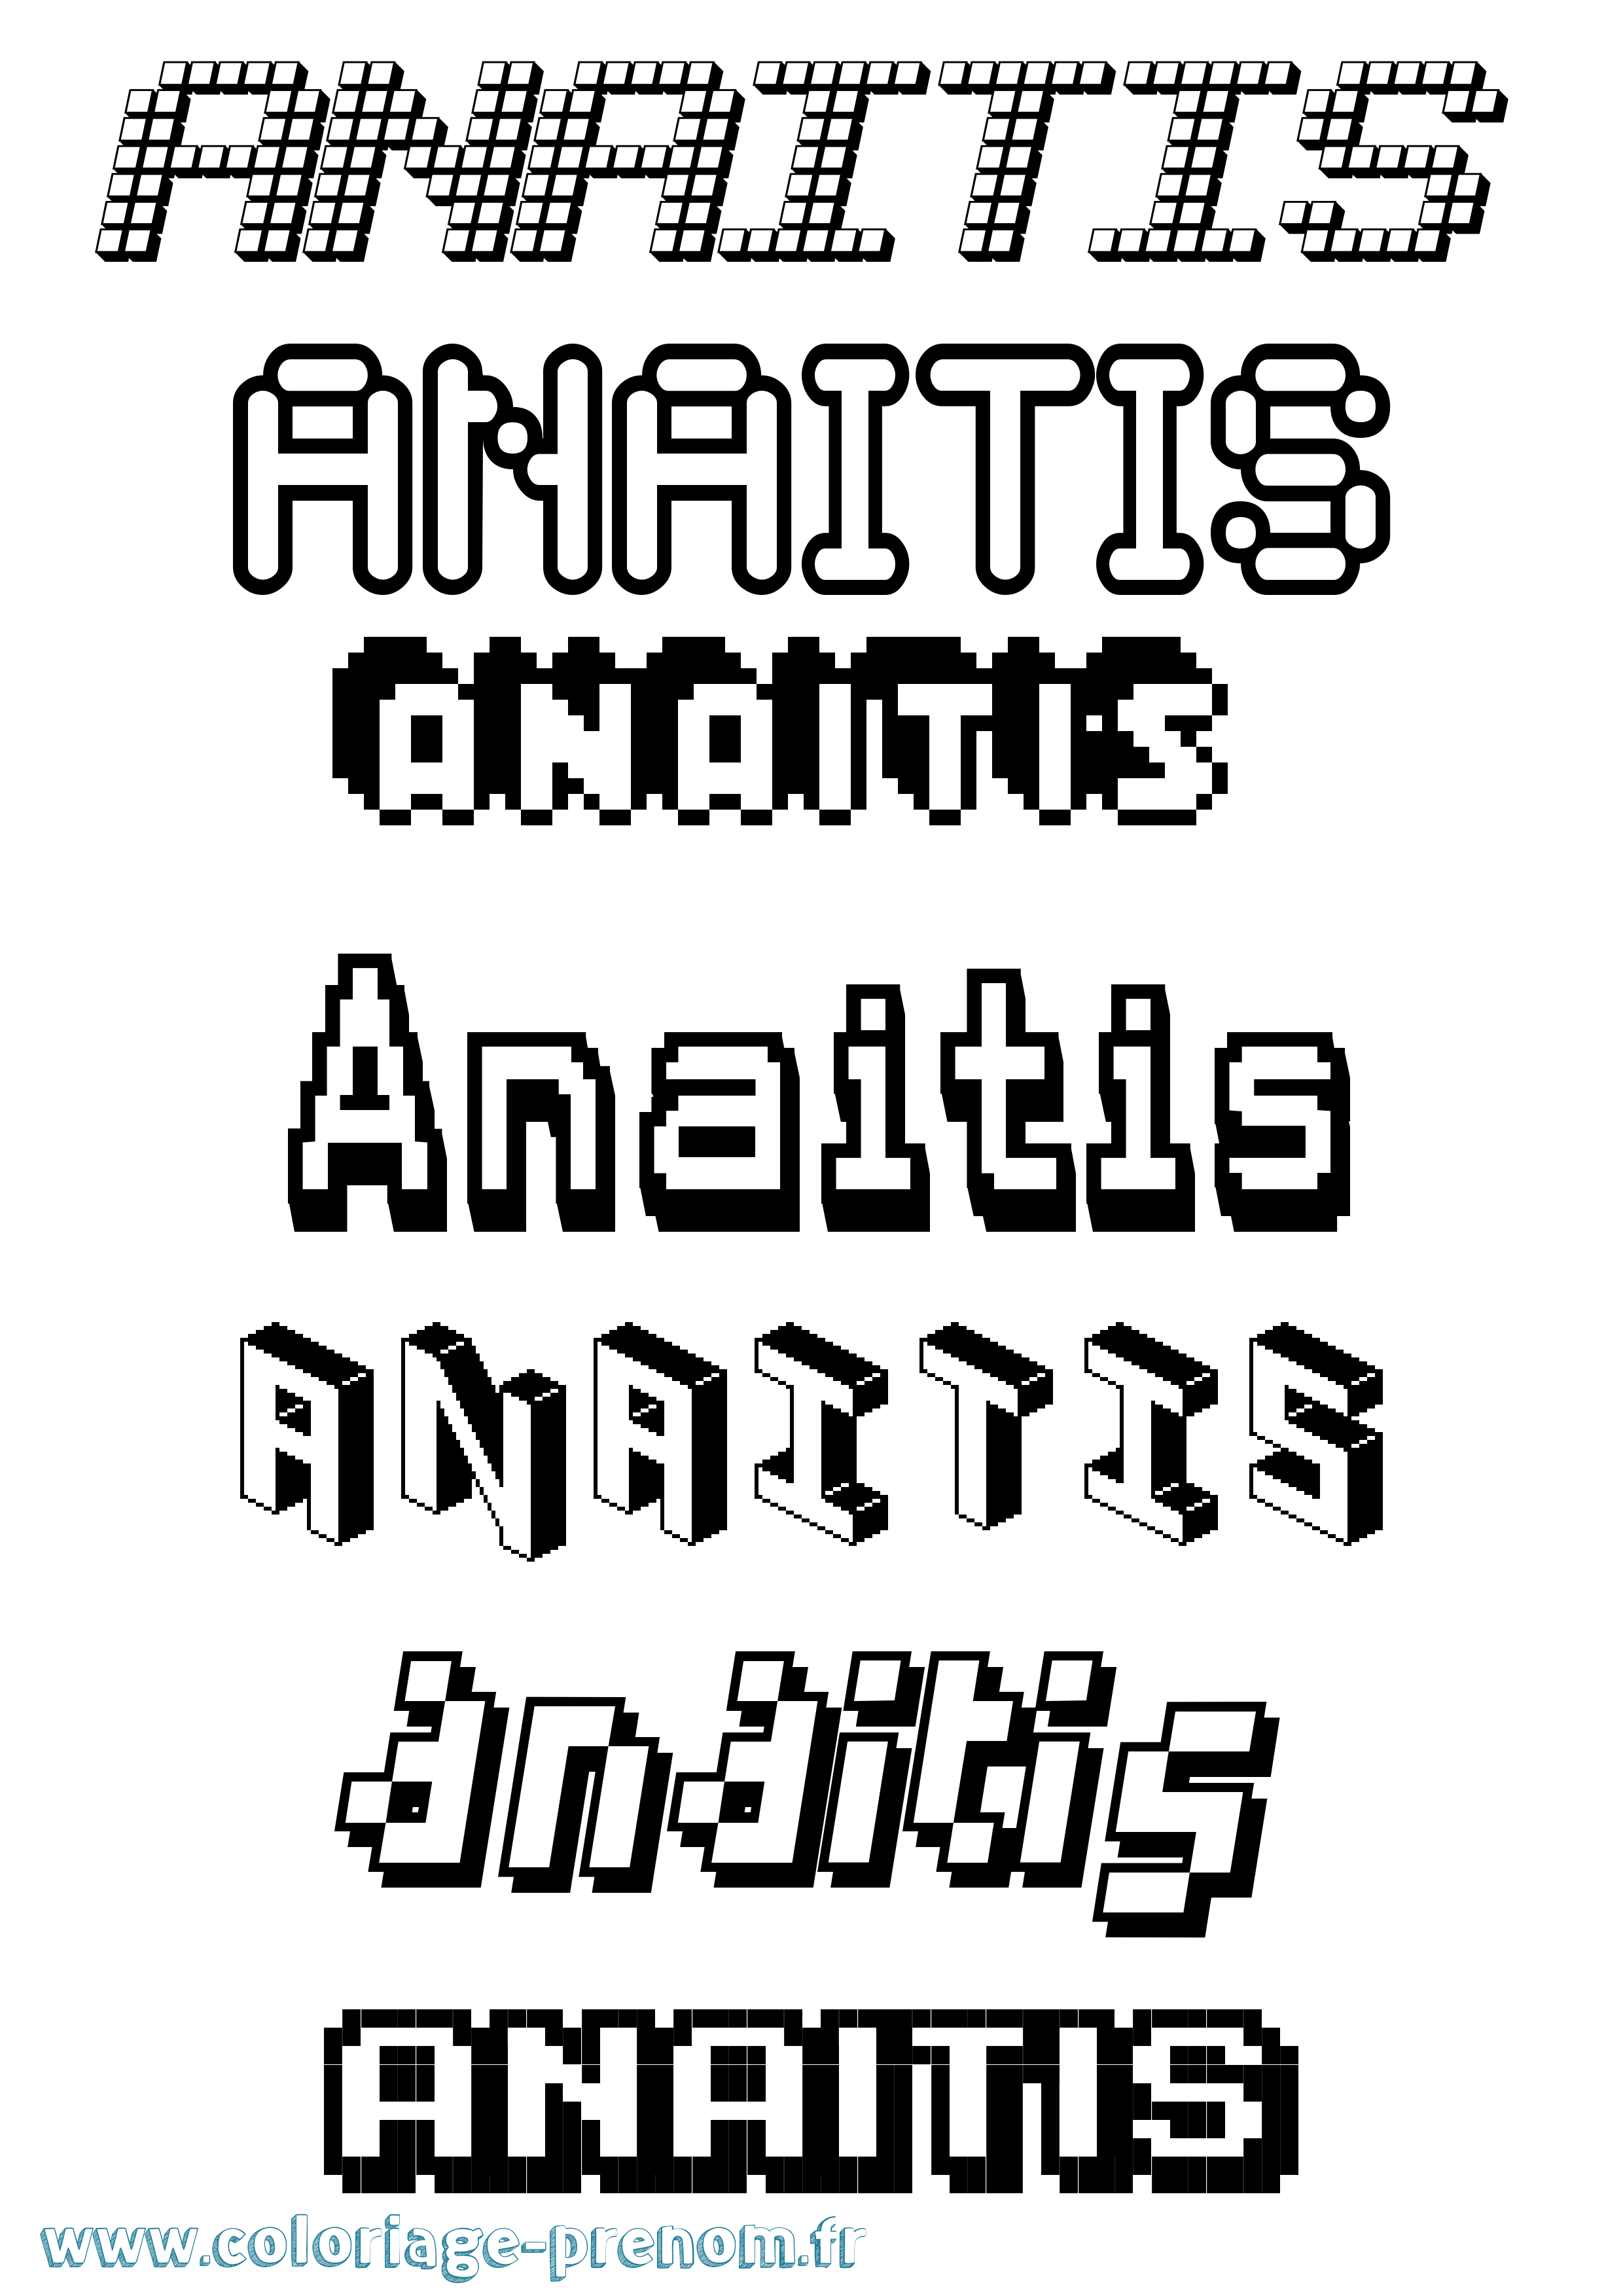 Coloriage prénom Anaitis Pixel